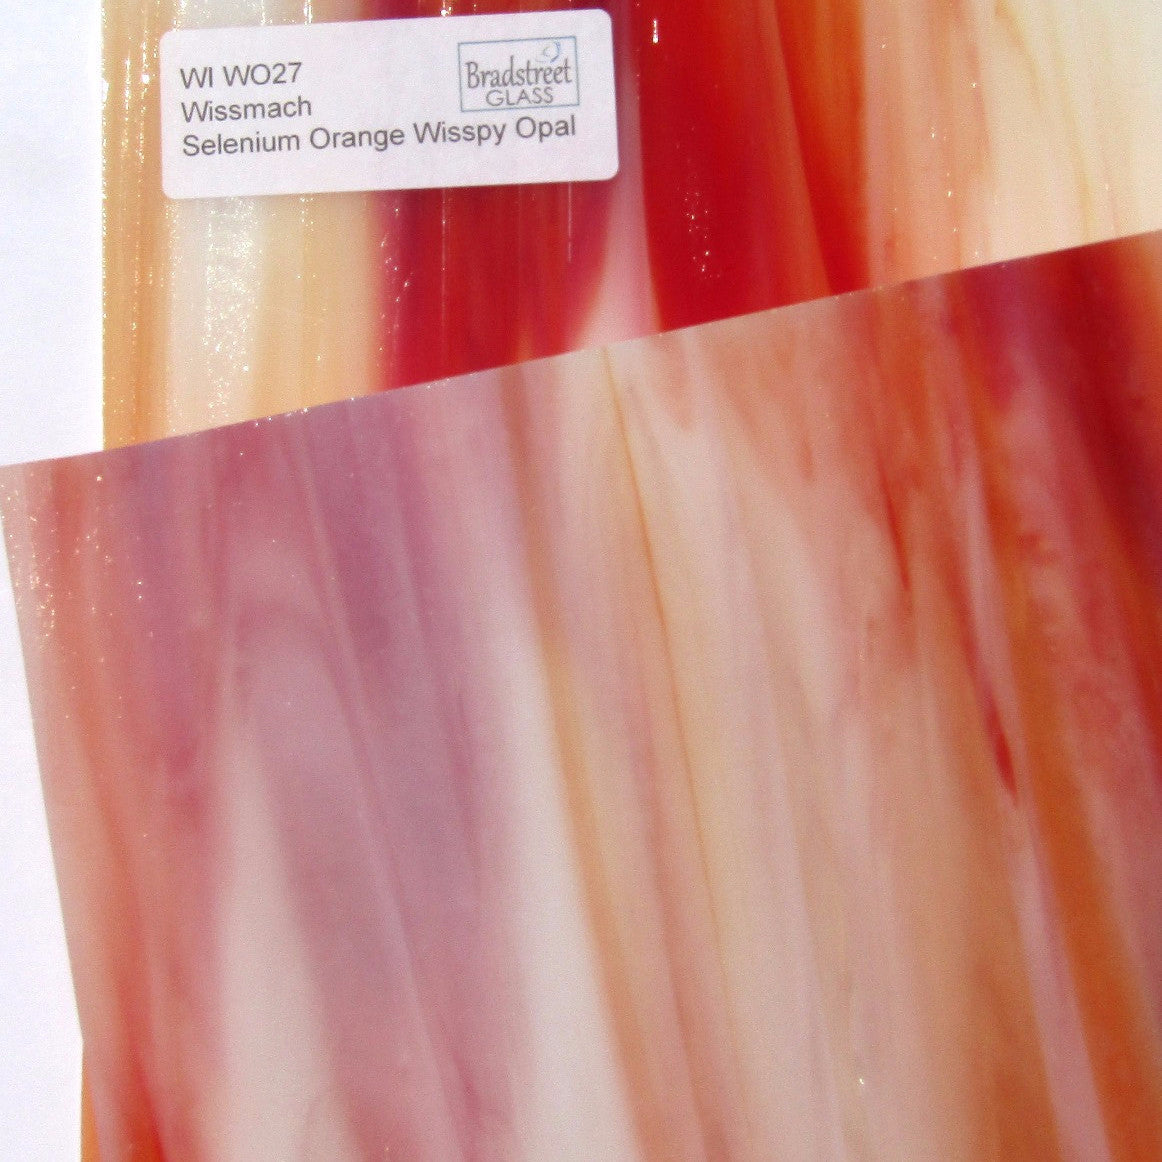 Selenium Orange Wispy Opal Stained Glass Sheet Wissmach WO27